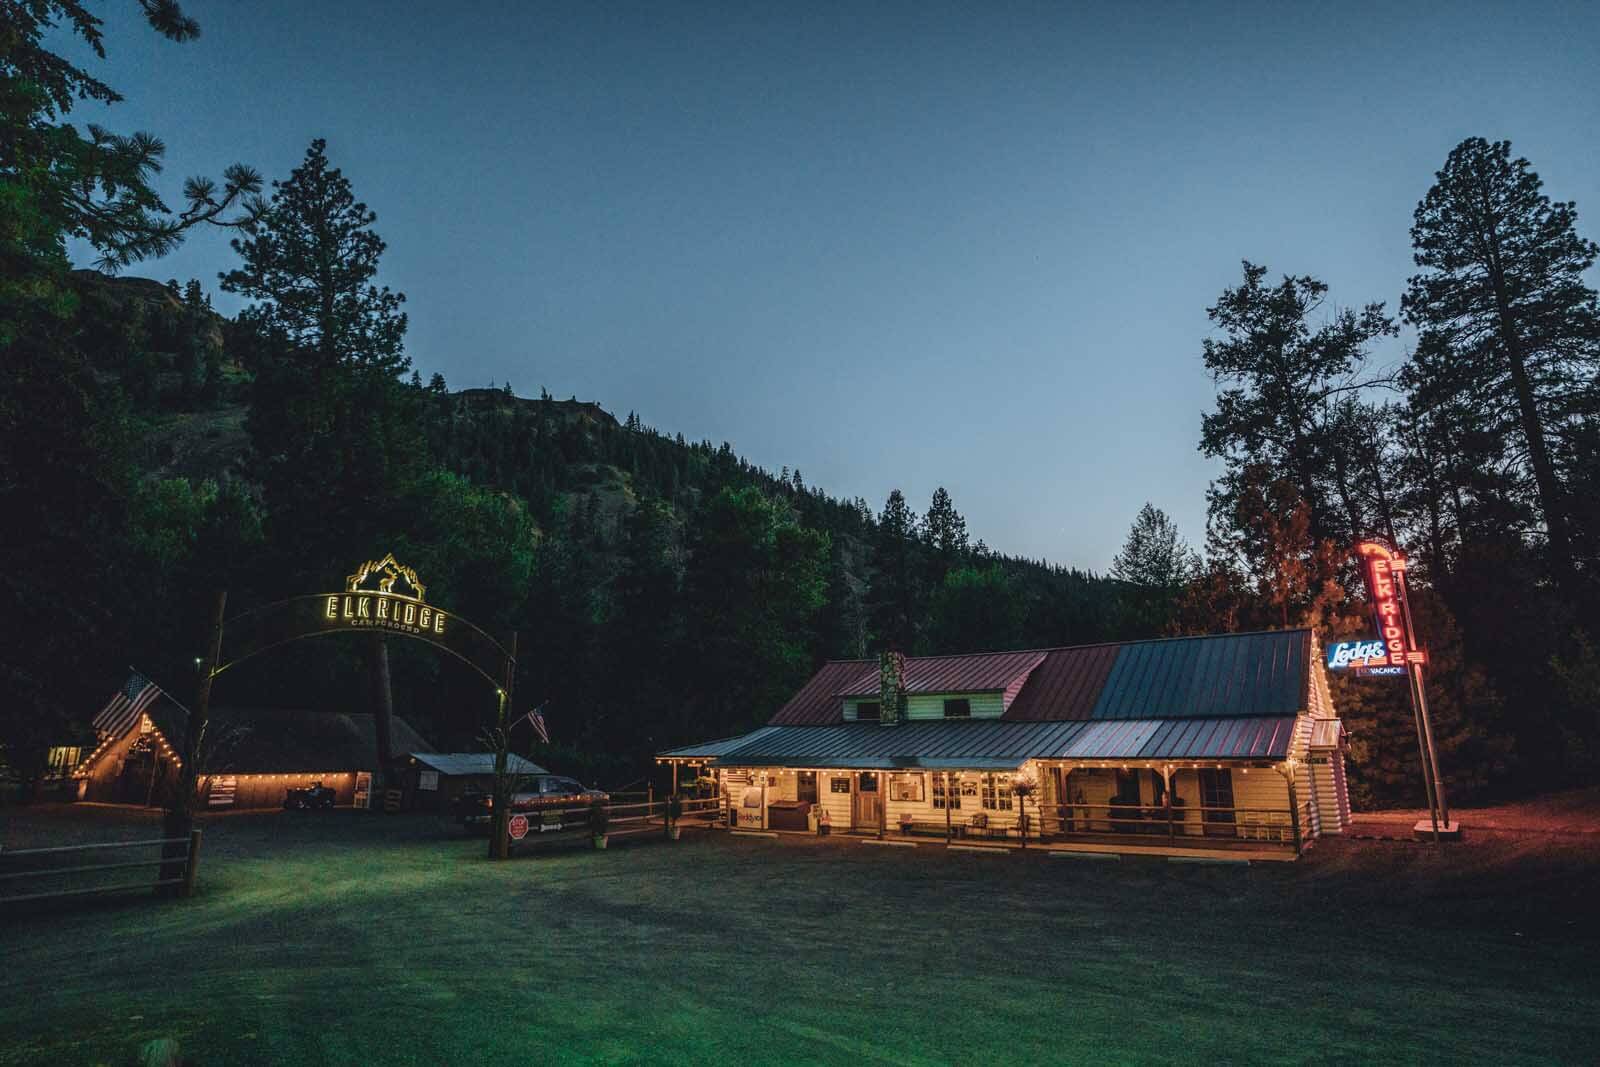 Elk Ridge Campground in Naches Washington